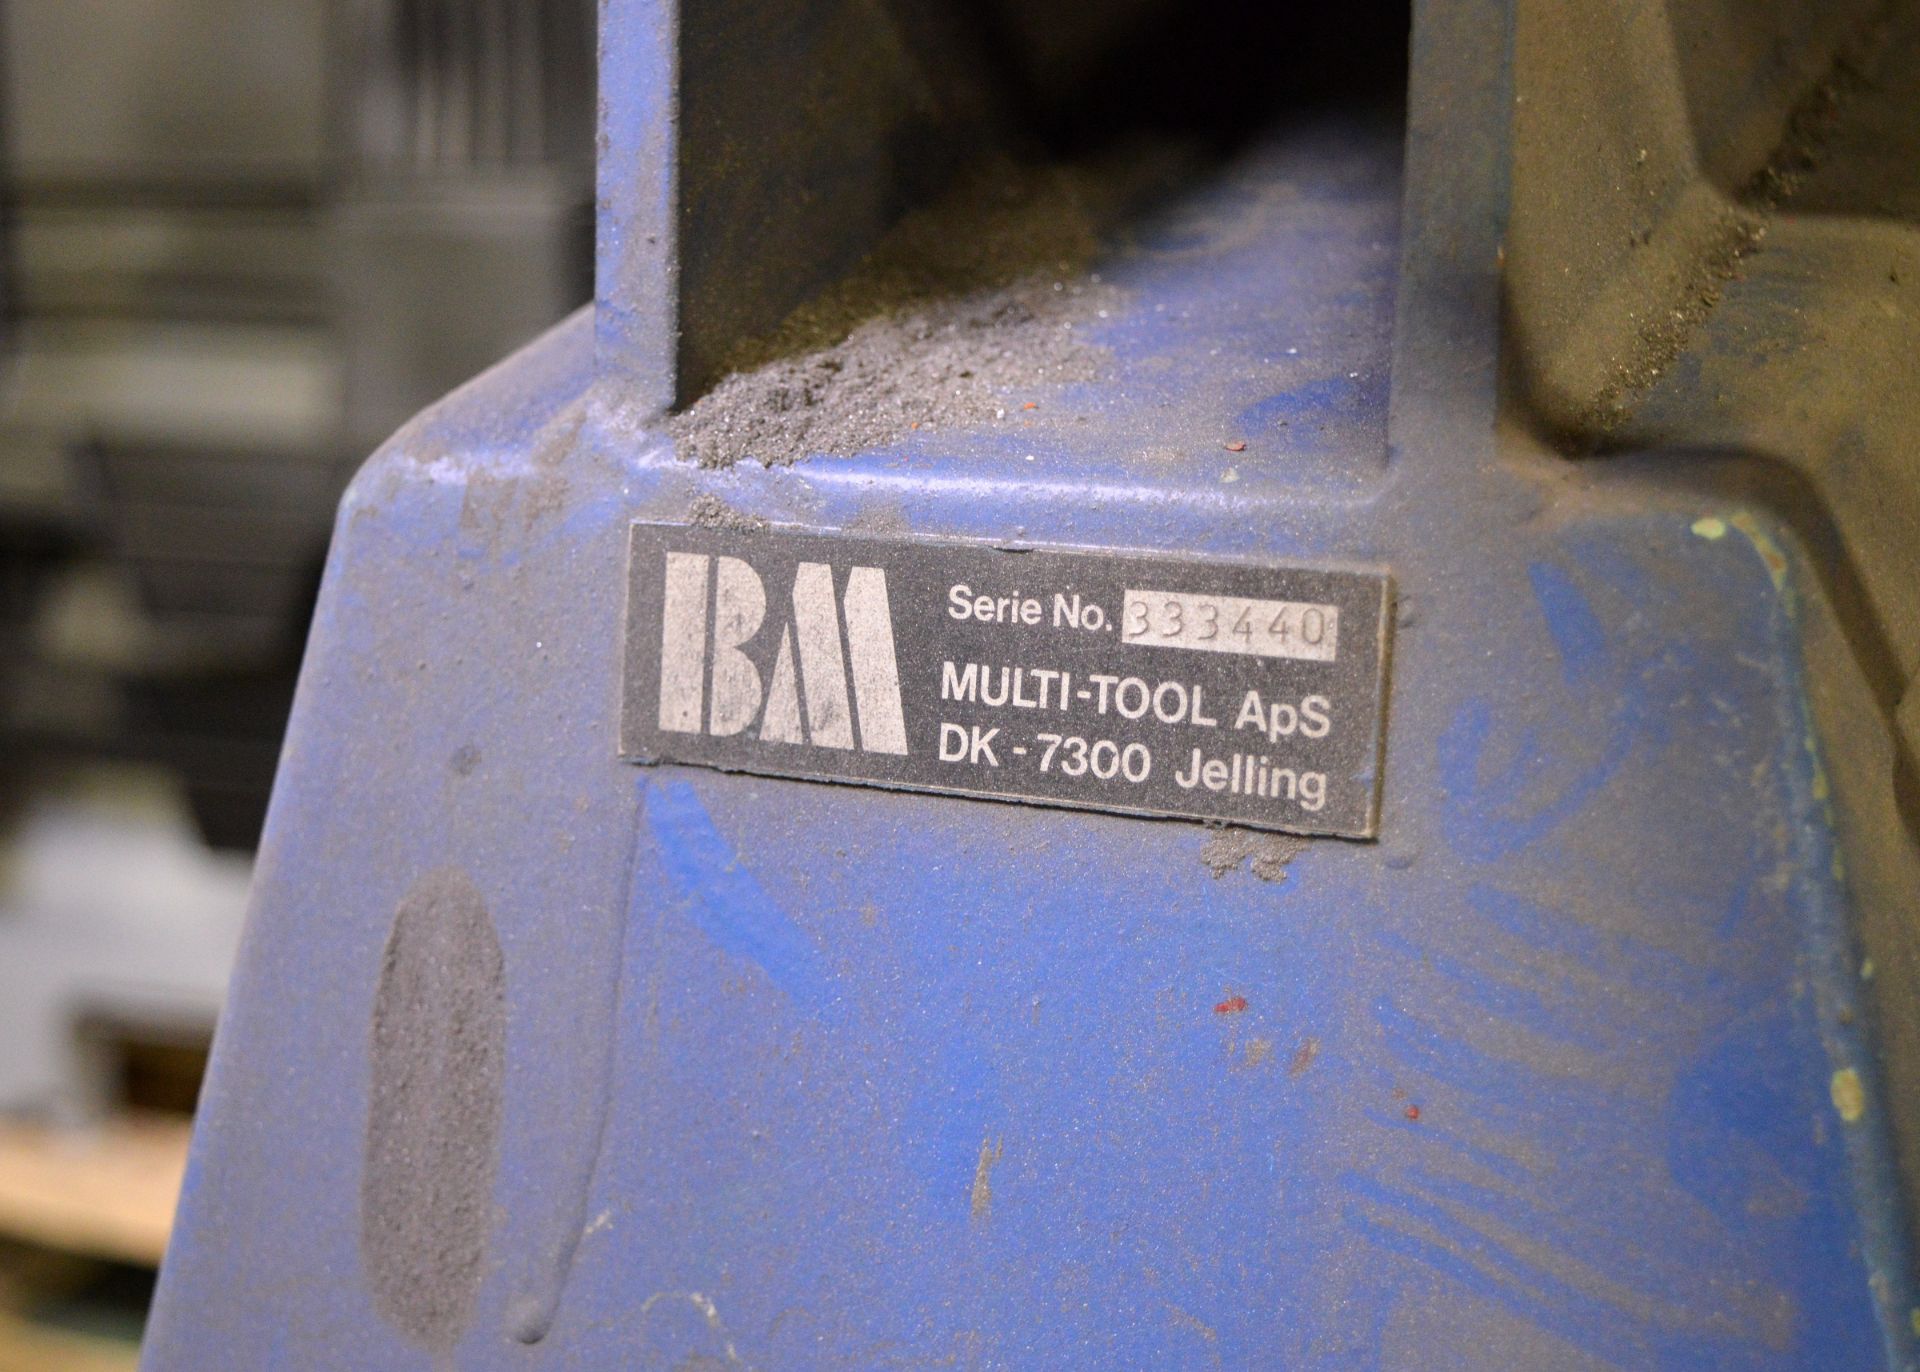 BM Belt Linisher Machine L 1200mm x W 430mm x H 1100mm - Image 4 of 5